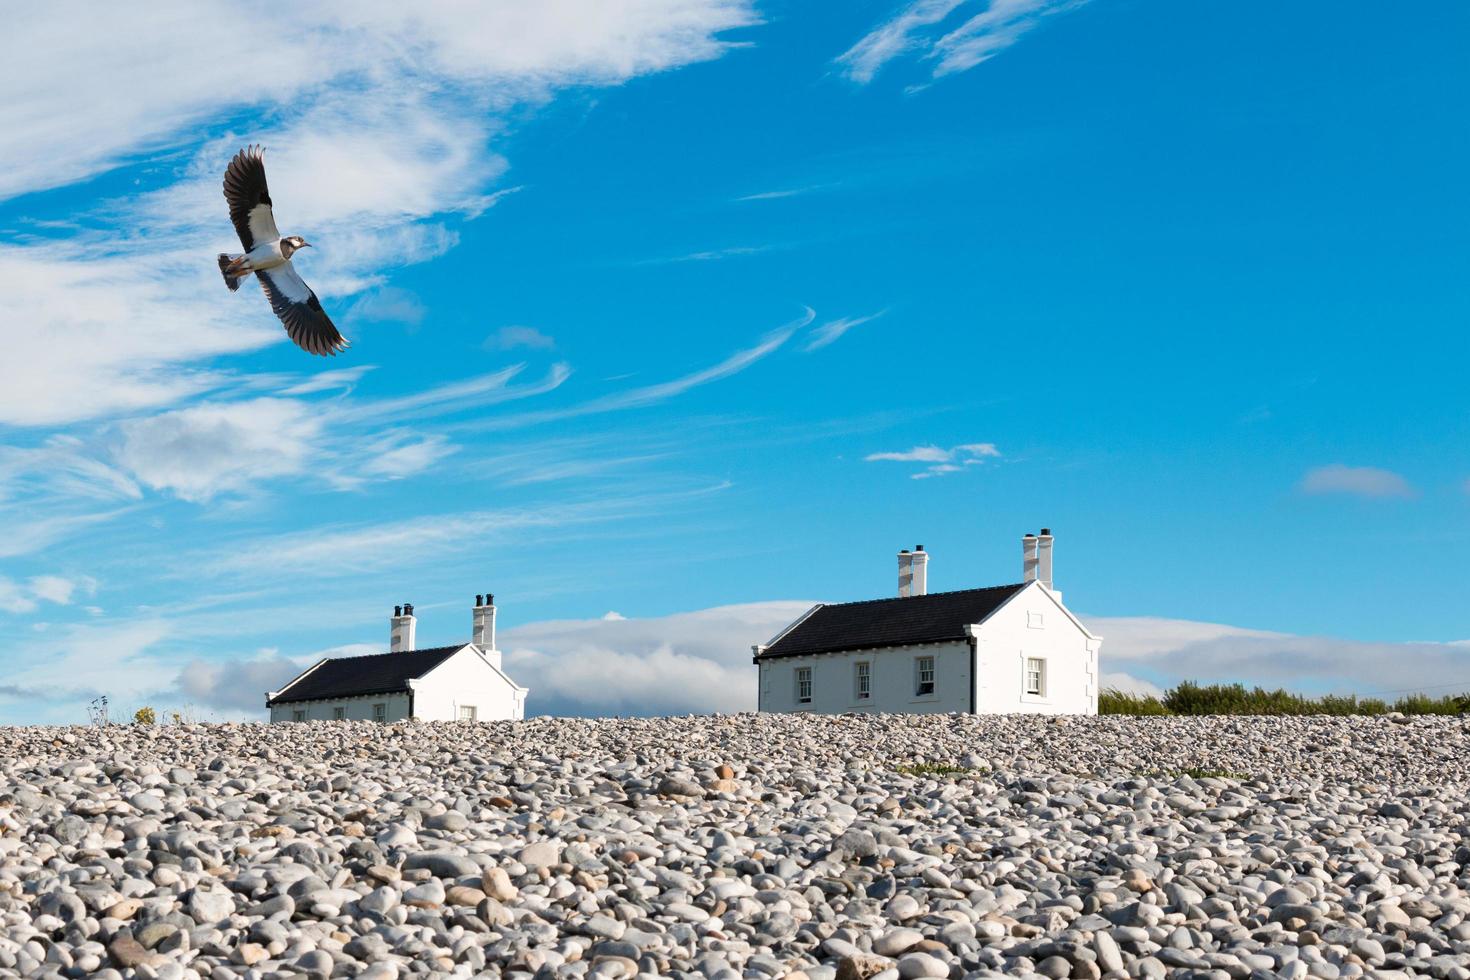 Vanneau oiseau en vol avec des maisons en arrière-plan contre le ciel bleu nuageux photo